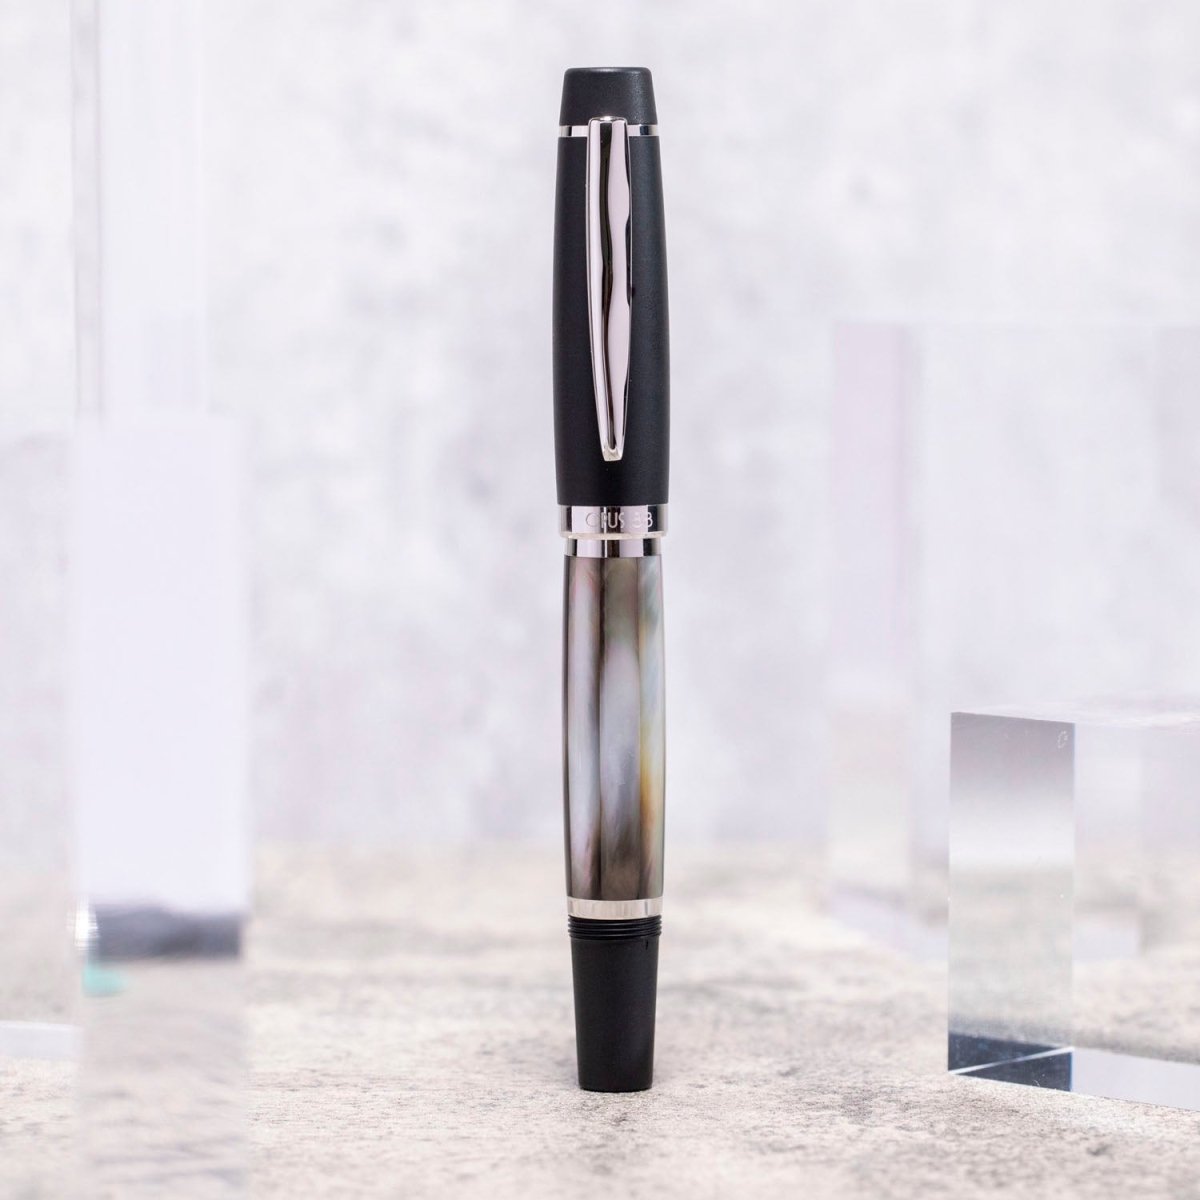 Opus 88 Shell Black Mother of Pearl Fountain pen - SCOOBOO - OP88_SHL_BLK_MOP_FPEF_98031502_EF - Fountain Pen